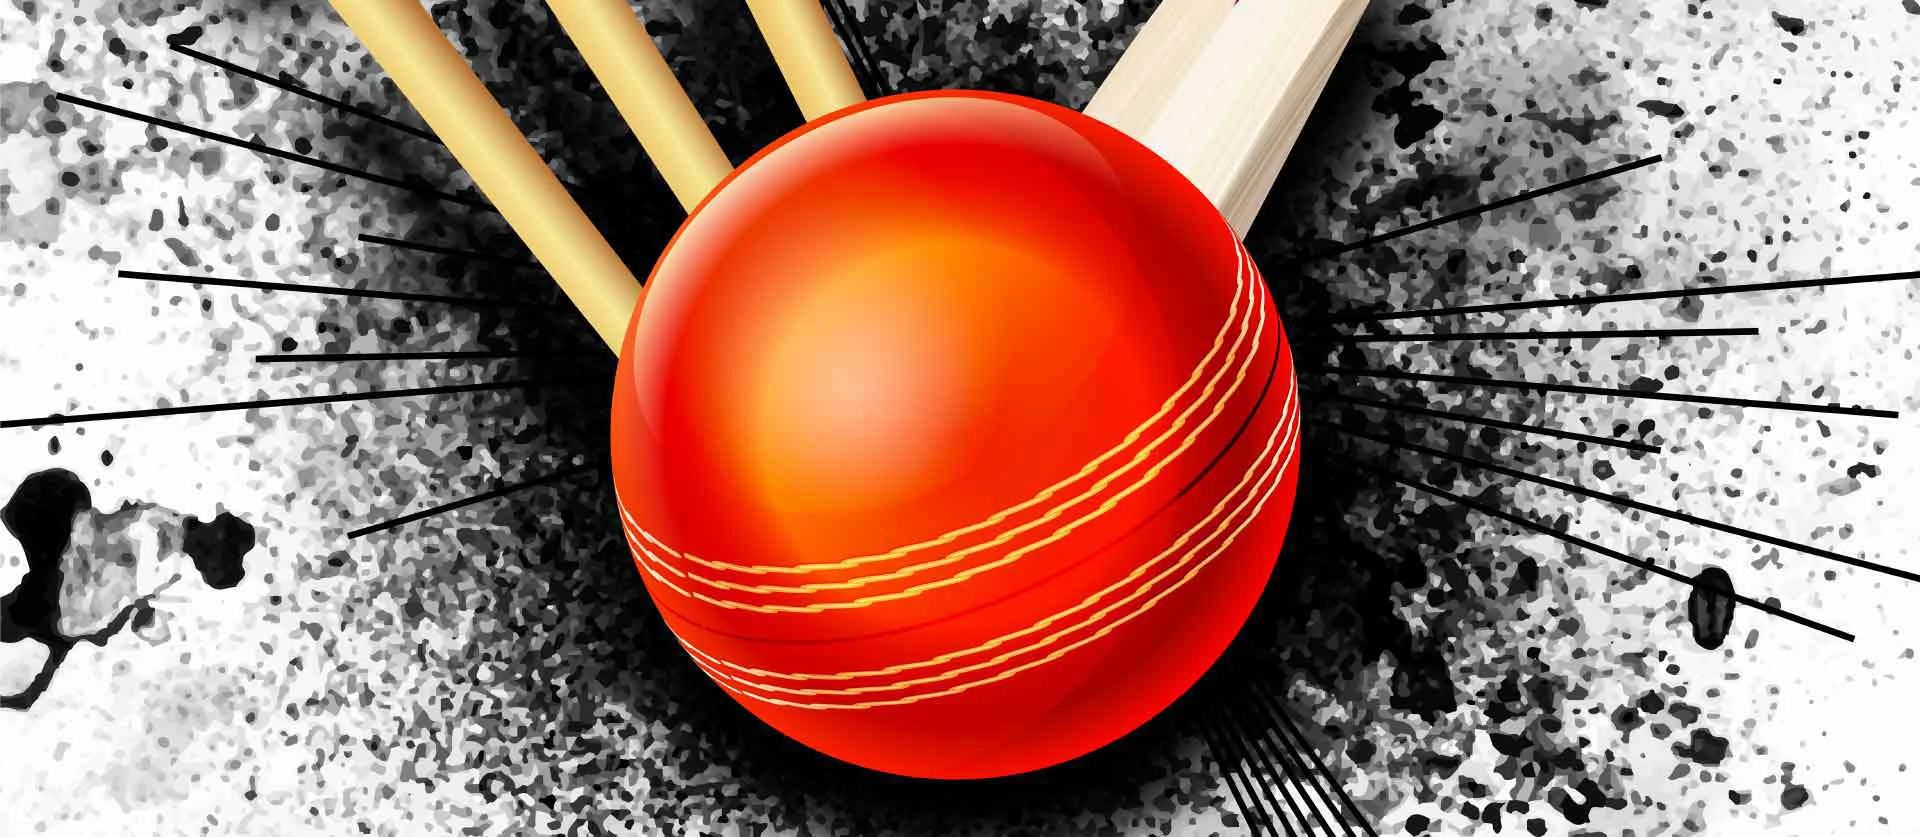 Online Cricket Satta ID Provider | Cricket Satta Online ID | Best
Online Cricket Satta ID Provider | Varun Online Hub